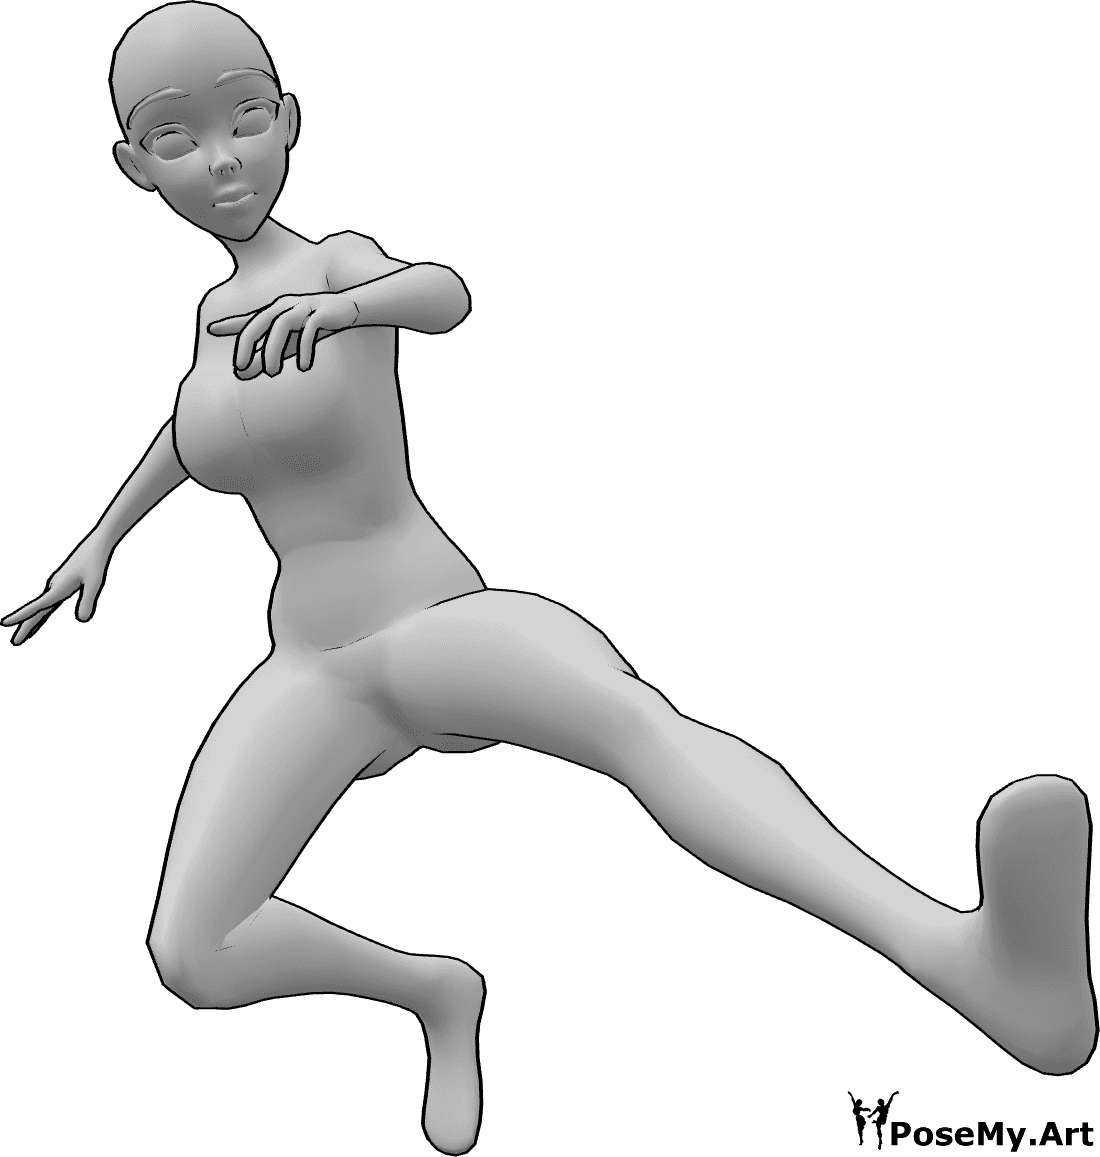 Riferimento alle pose- Posa dinamica di calcio Anime - Femmina antropomorfa che salta e calcia in aria con il piede sinistro, posa dinamica di calcio